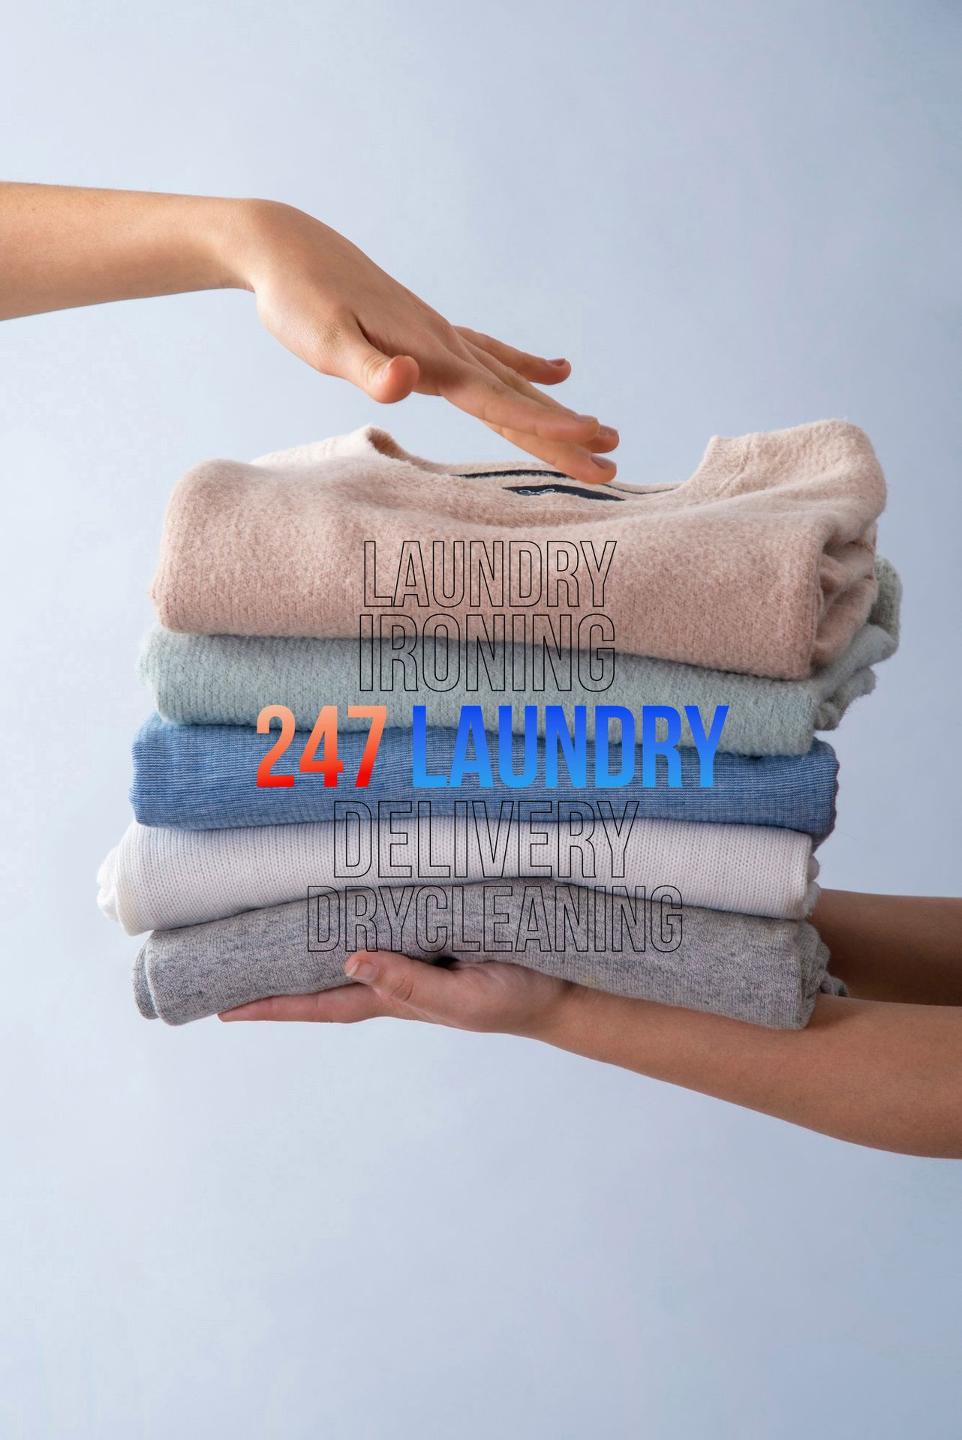 Dịch vụ giặt ủi vệ sinh chăm sóc quần áo giao nhận tận nơi nhanh nhất tại Giặt ủi 247